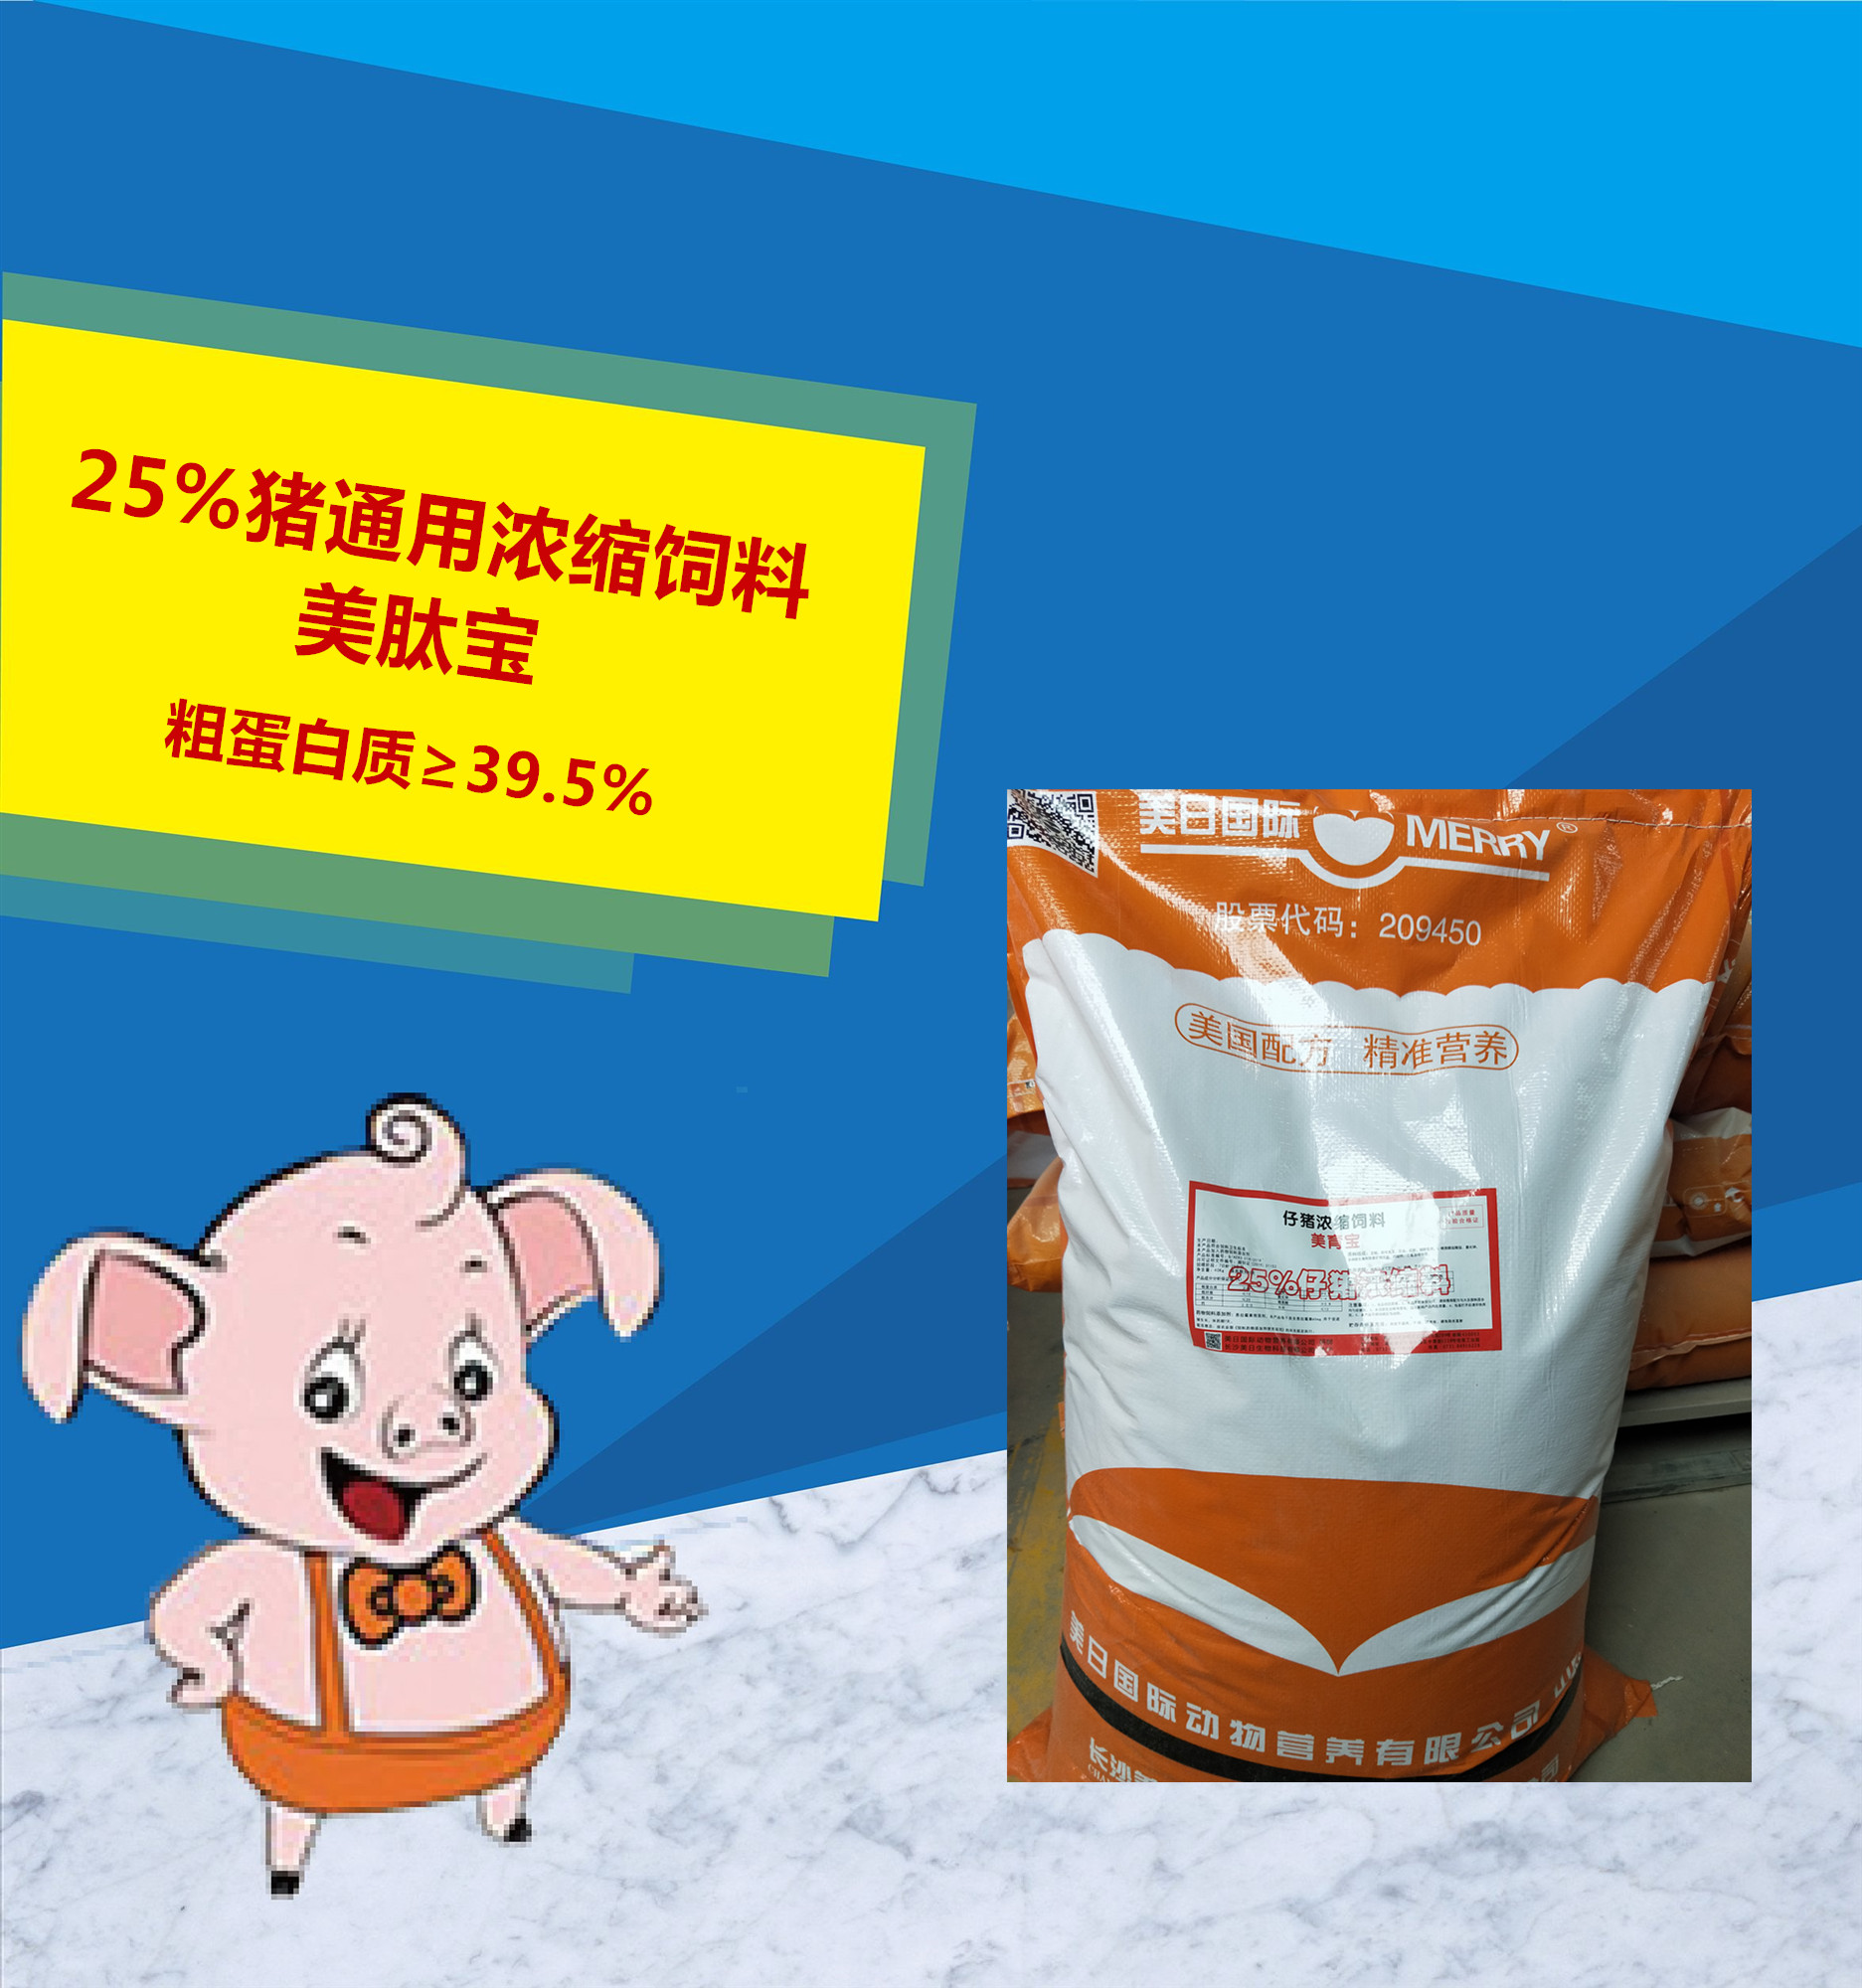 25%猪通用浓缩饲料